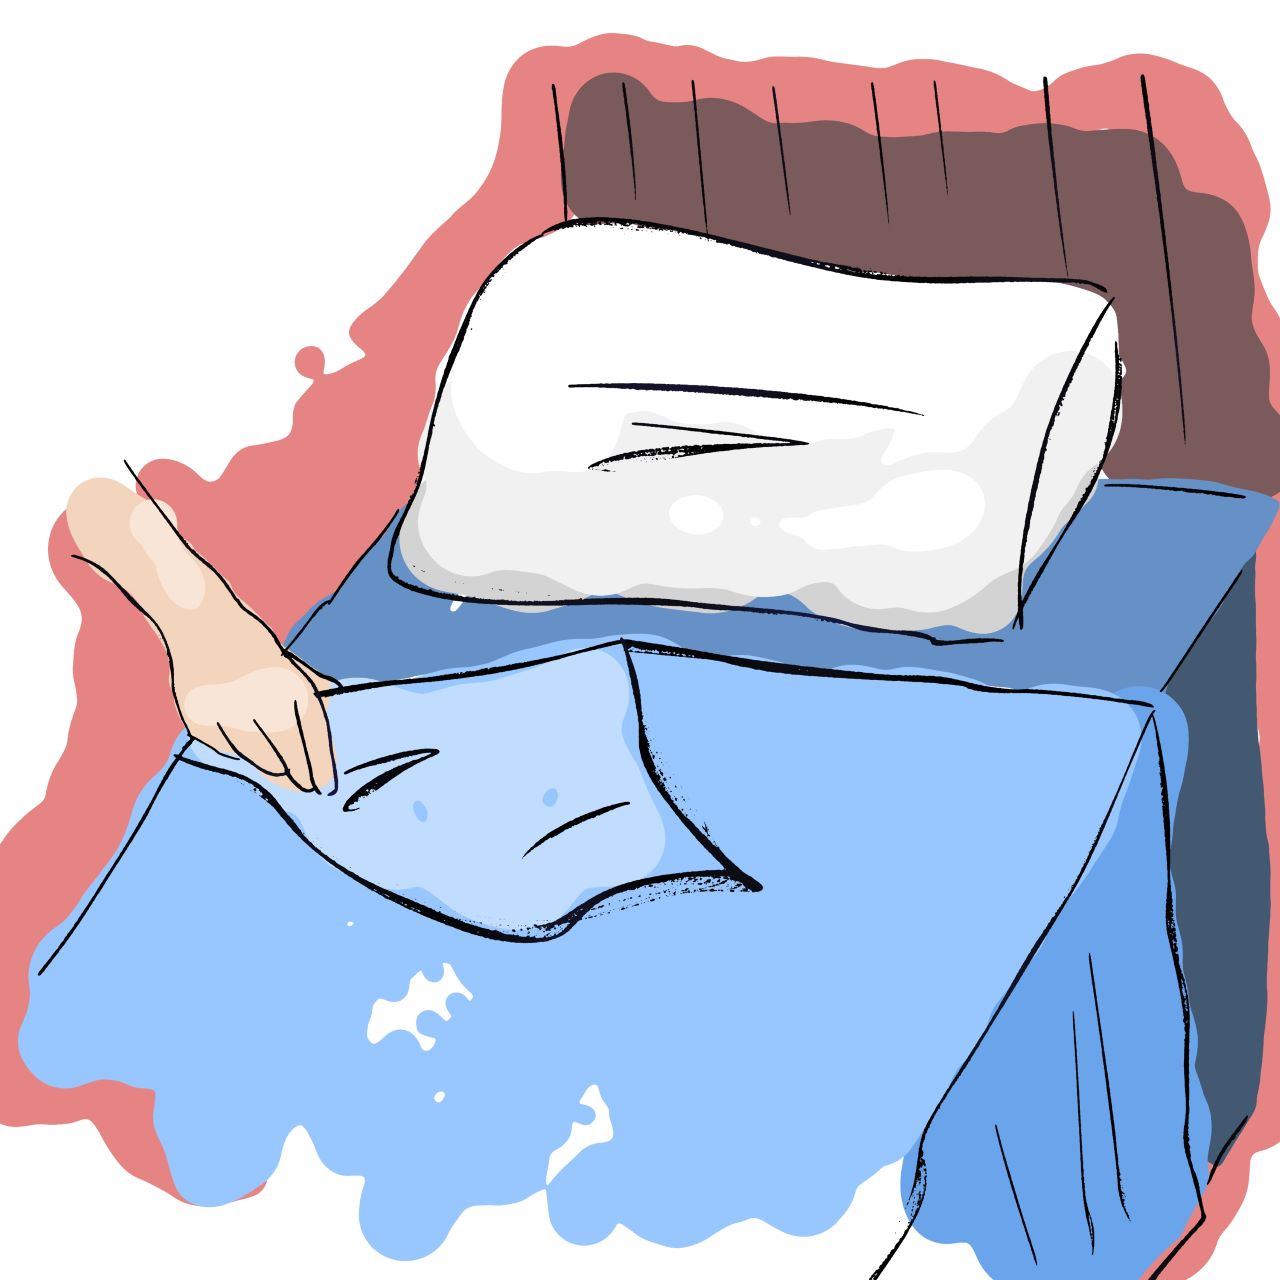 Ilustracijom je prikazano namještanje kreveta.